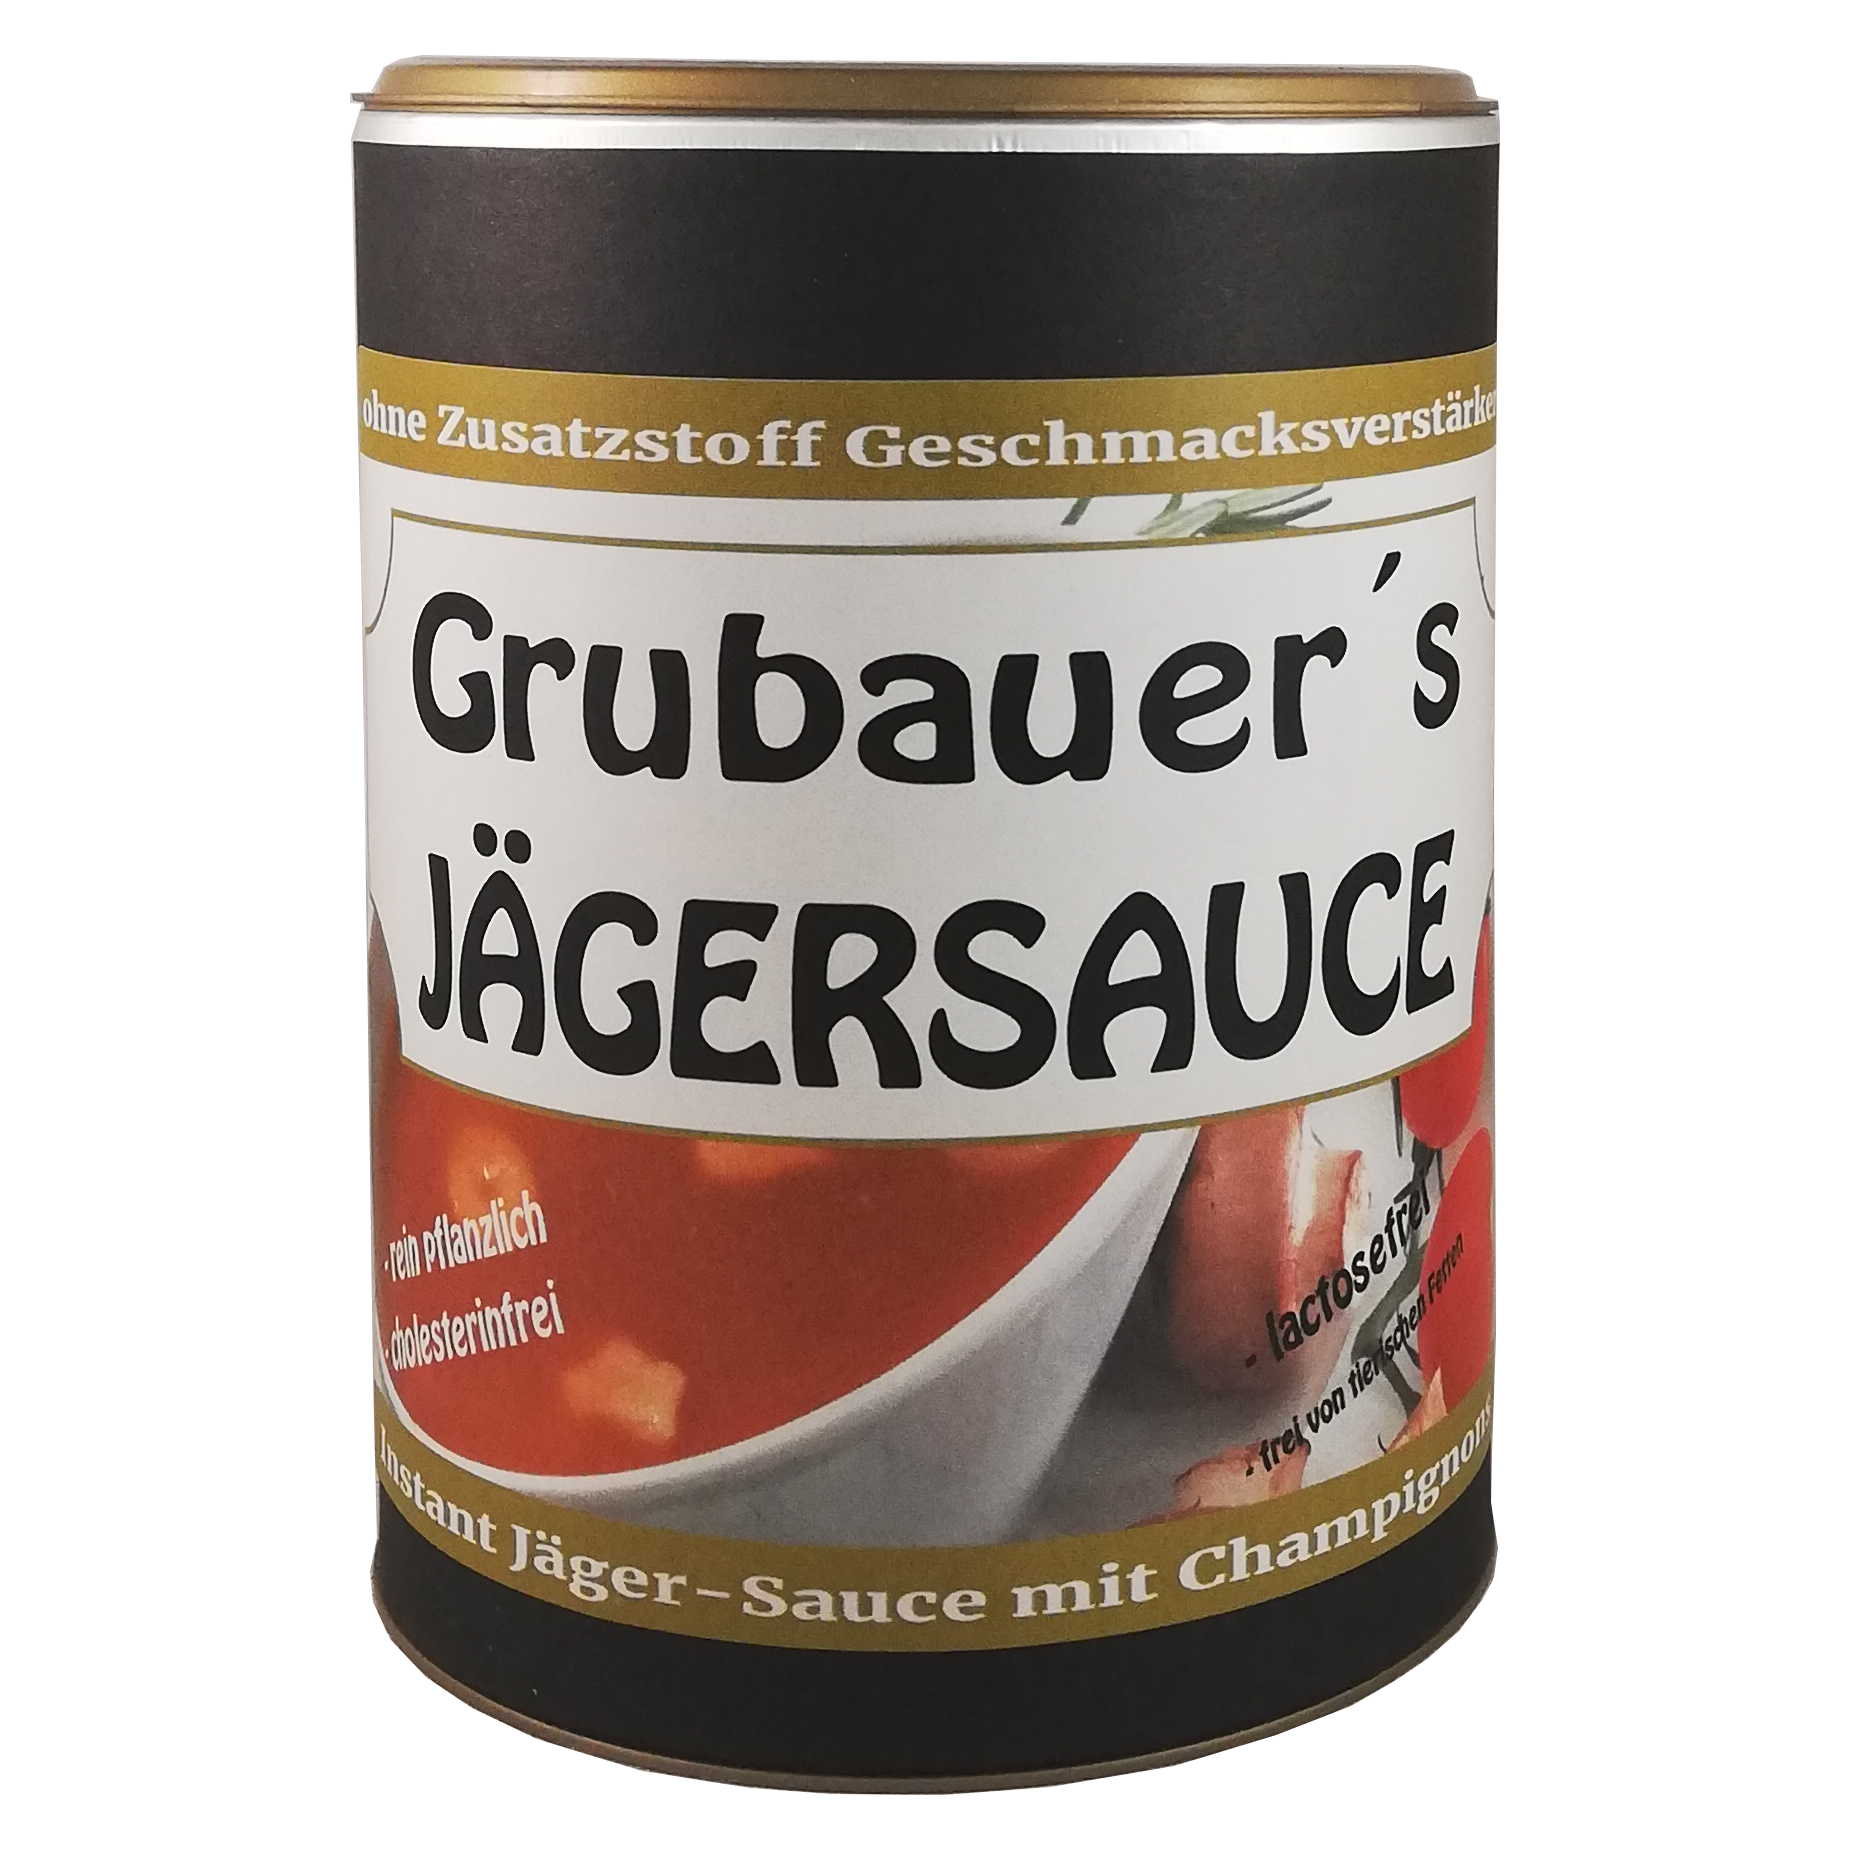 Grubauers Jägersauce - gewuerzhaus24.de